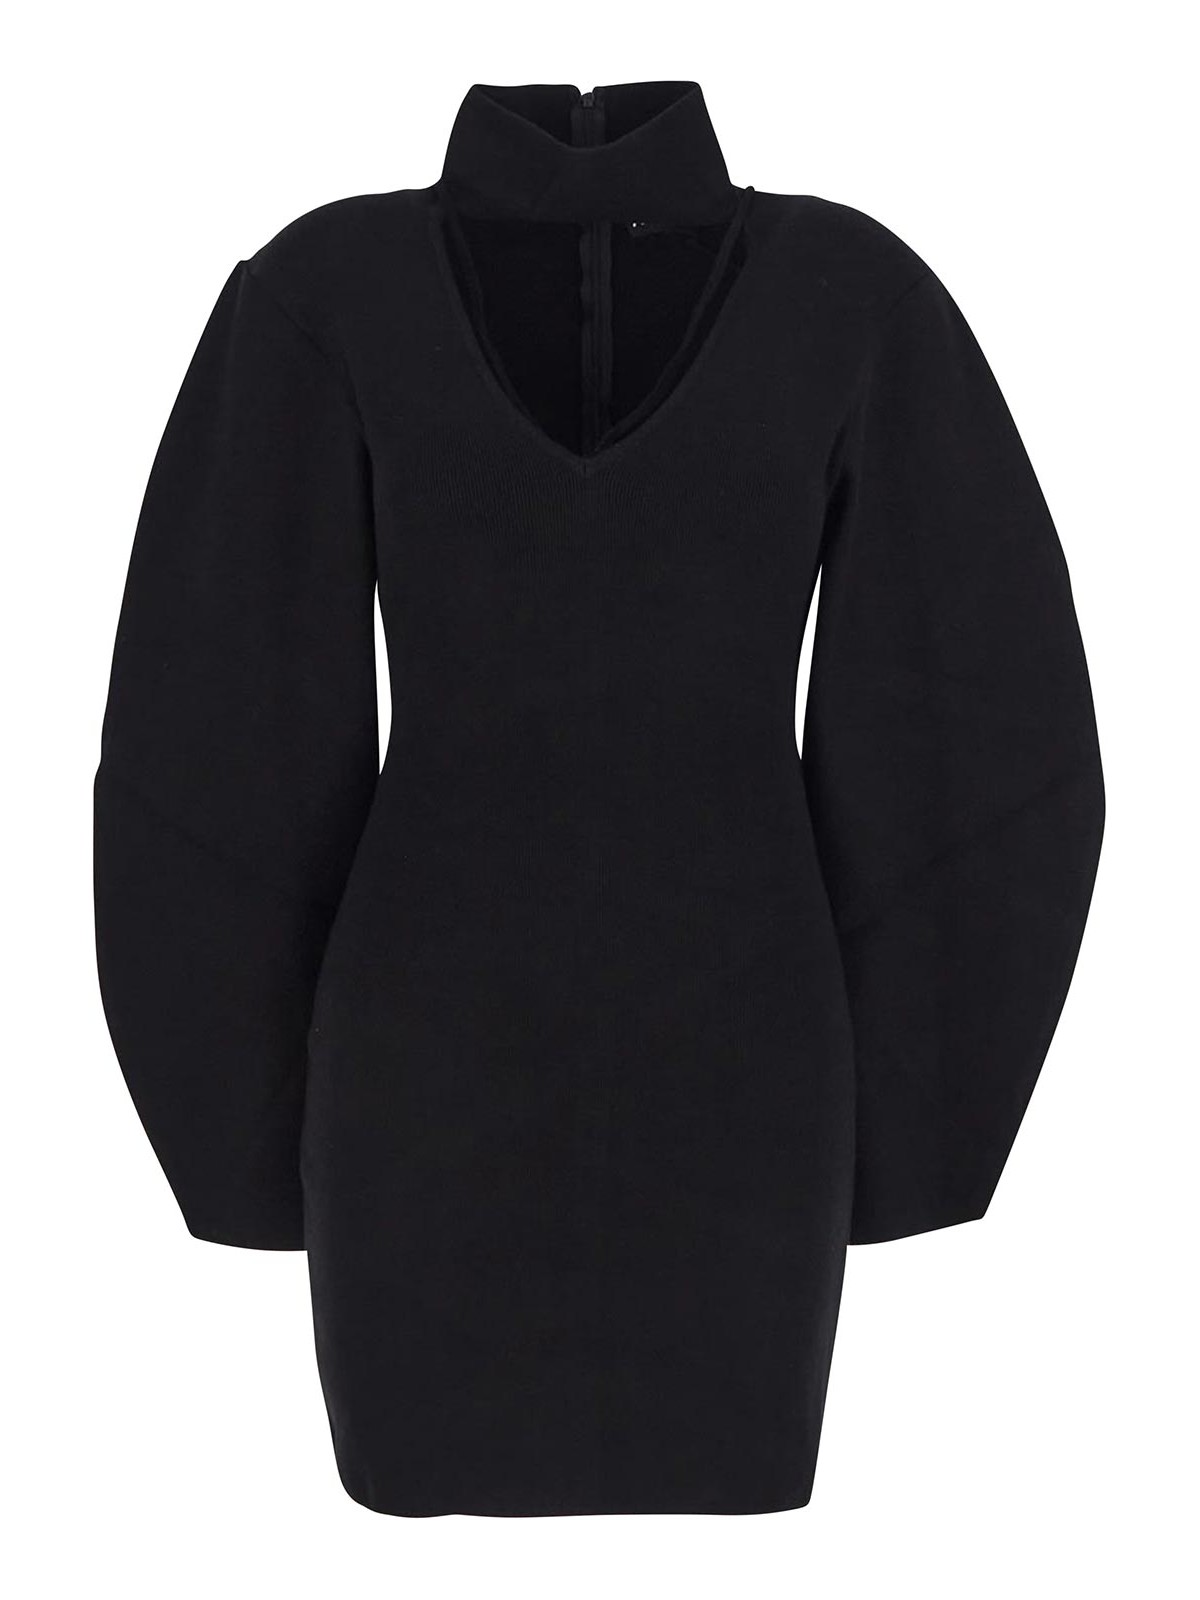 Shop Andreädamo Long Sleeves Black Dress